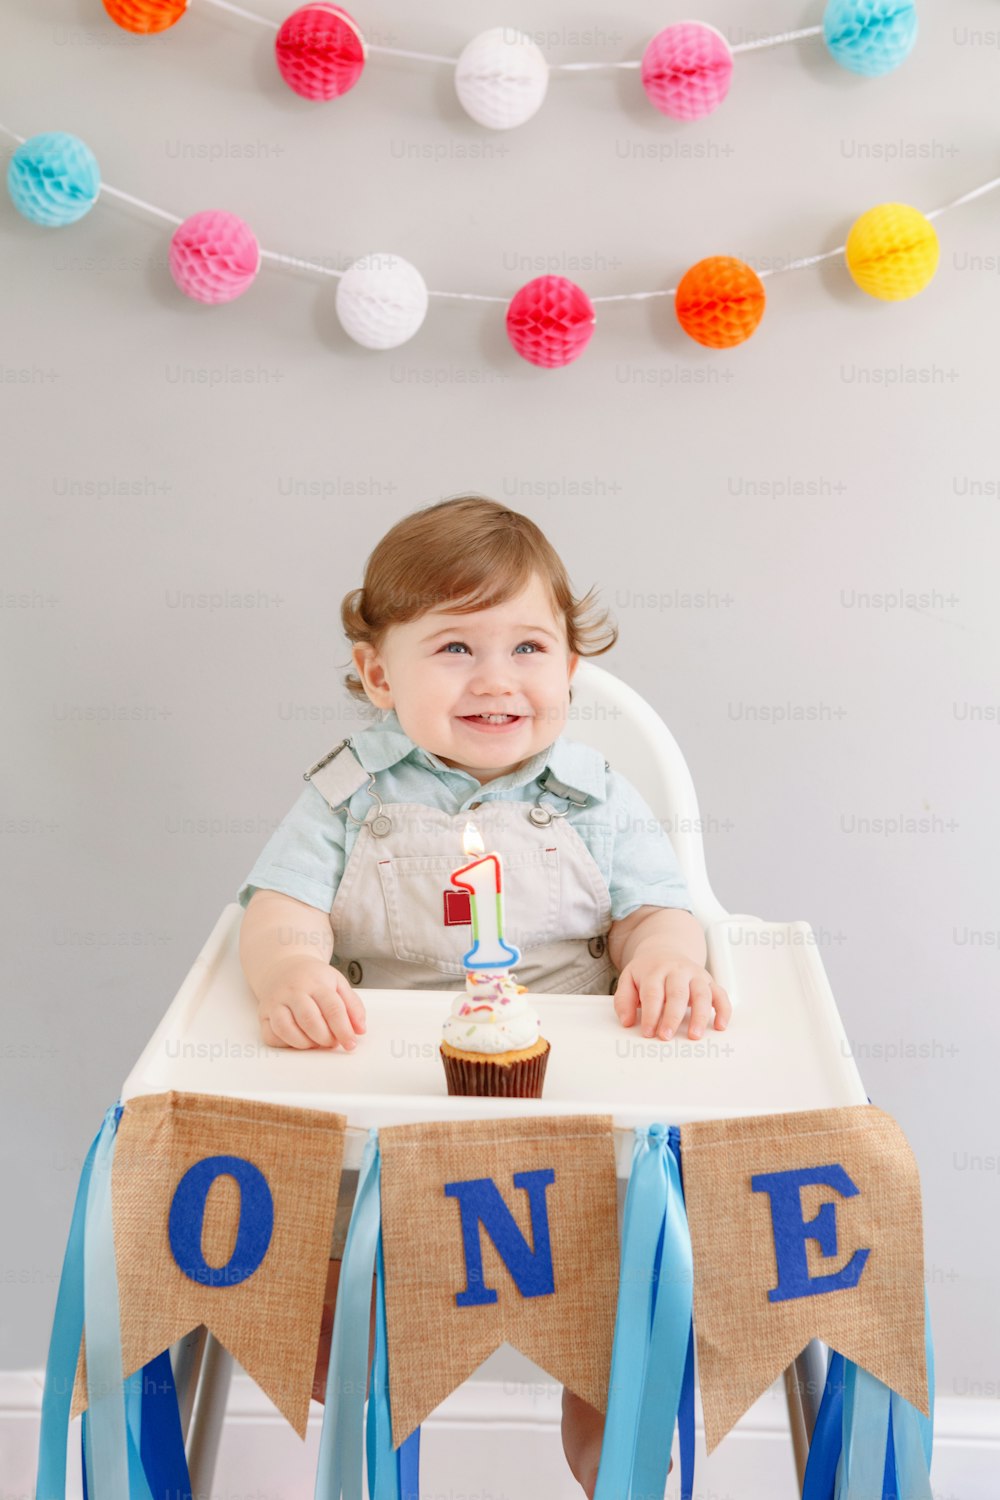 Heureux souriant mignon bébé caucasien célébrant son premier anniversaire à la maison. Enfant enfant enfant enfant assis dans une chaise haute mangeant un savoureux dessert de cupcake avec une bougie allumée. Concept de joyeux anniversaire.